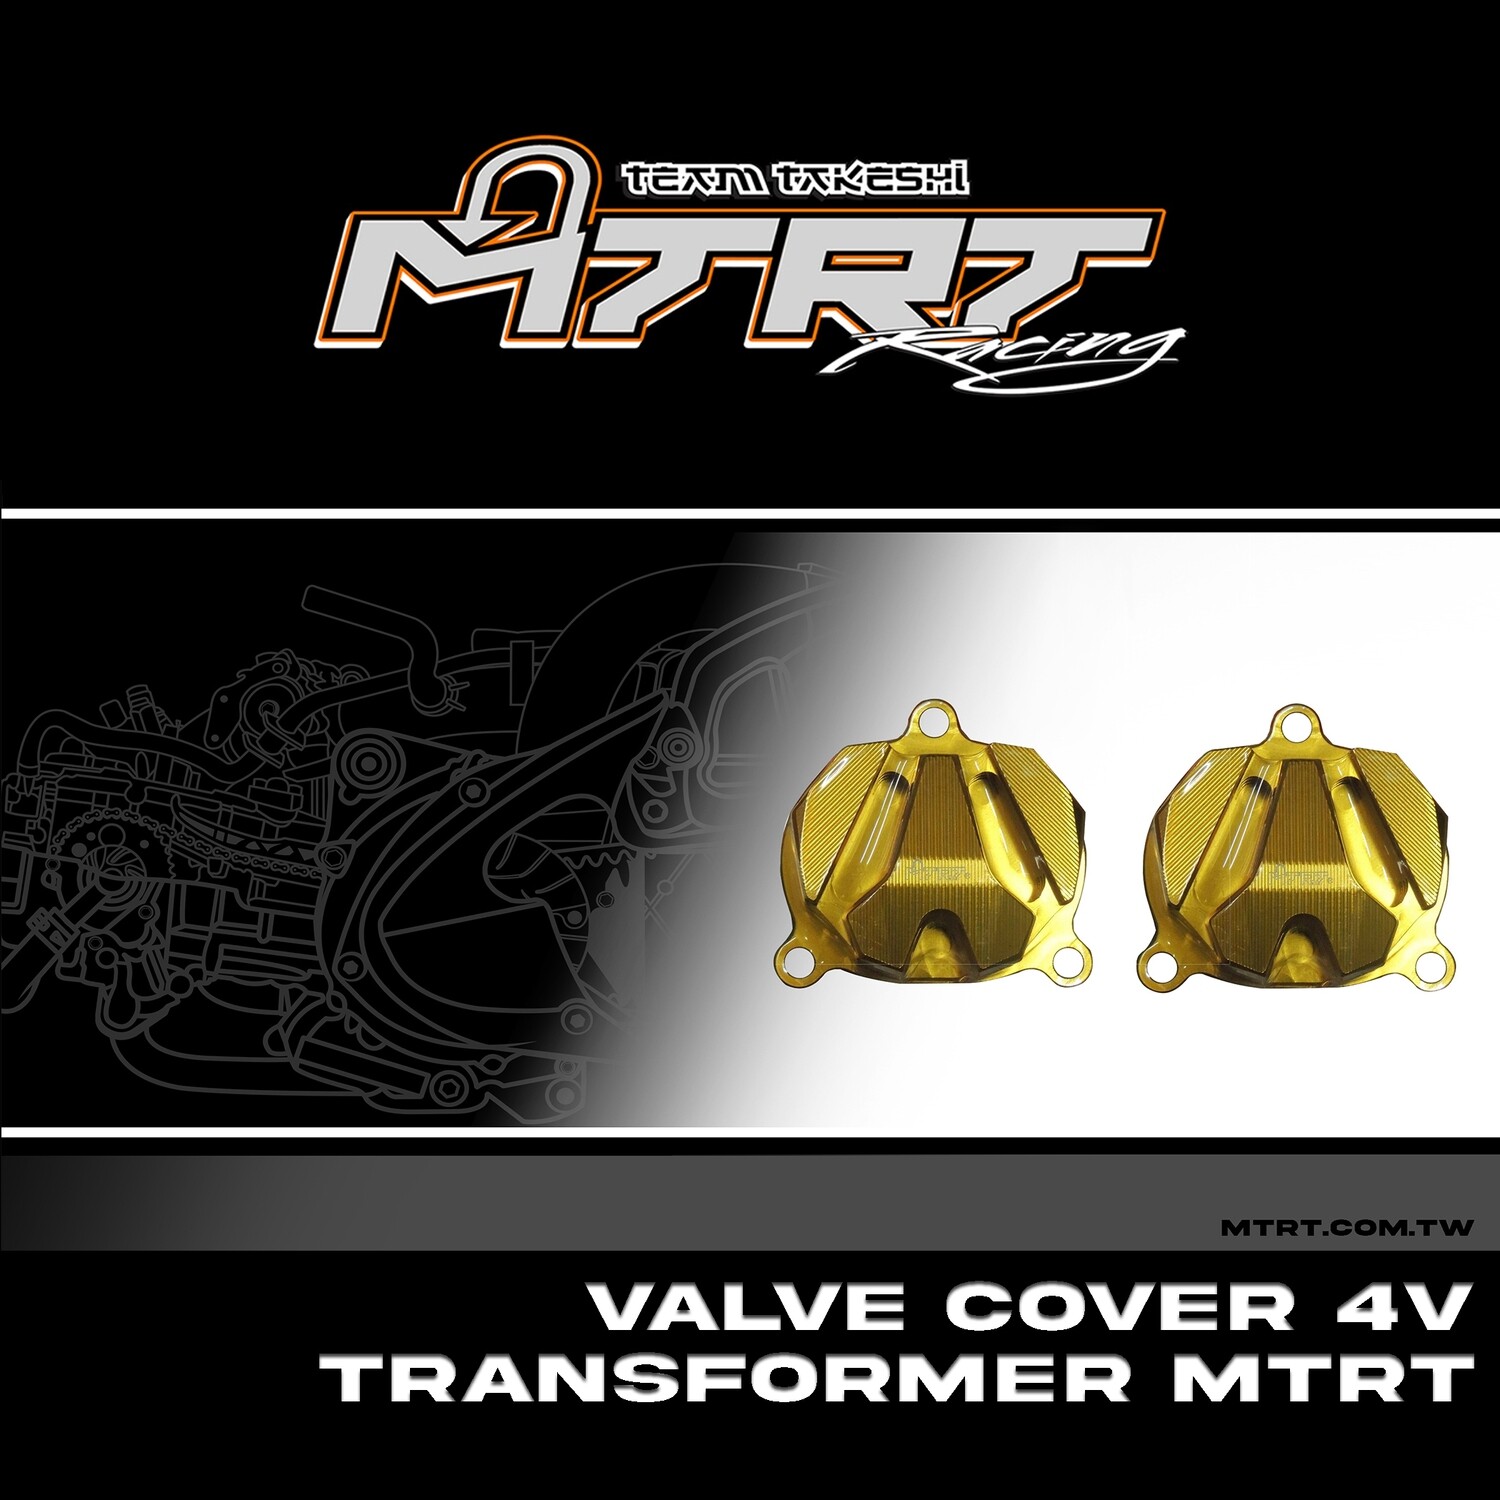 VALVE COVER 4V Transformer GOLD MTRT